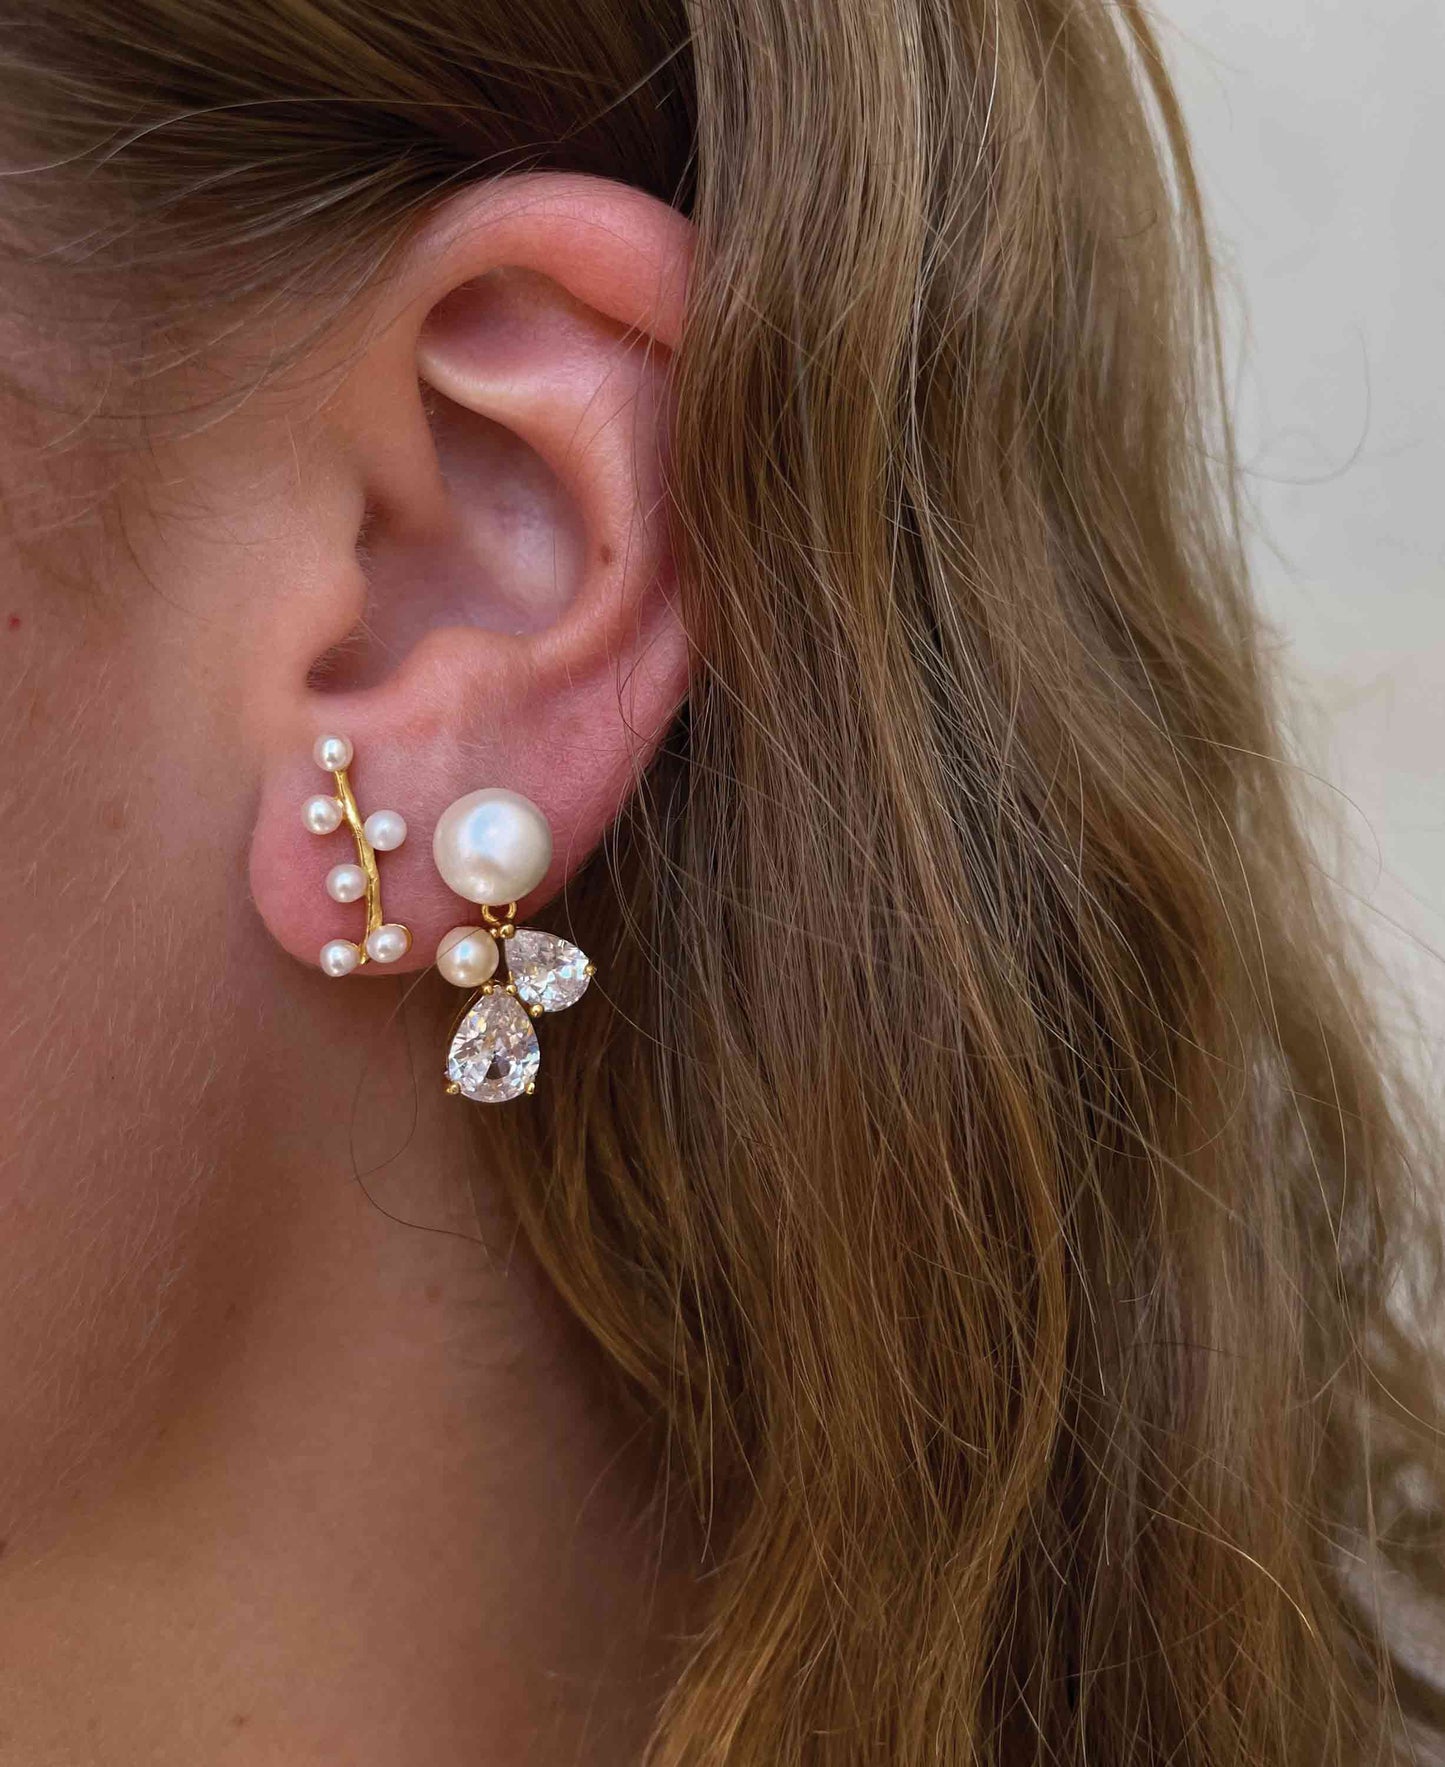 Ellen earrings